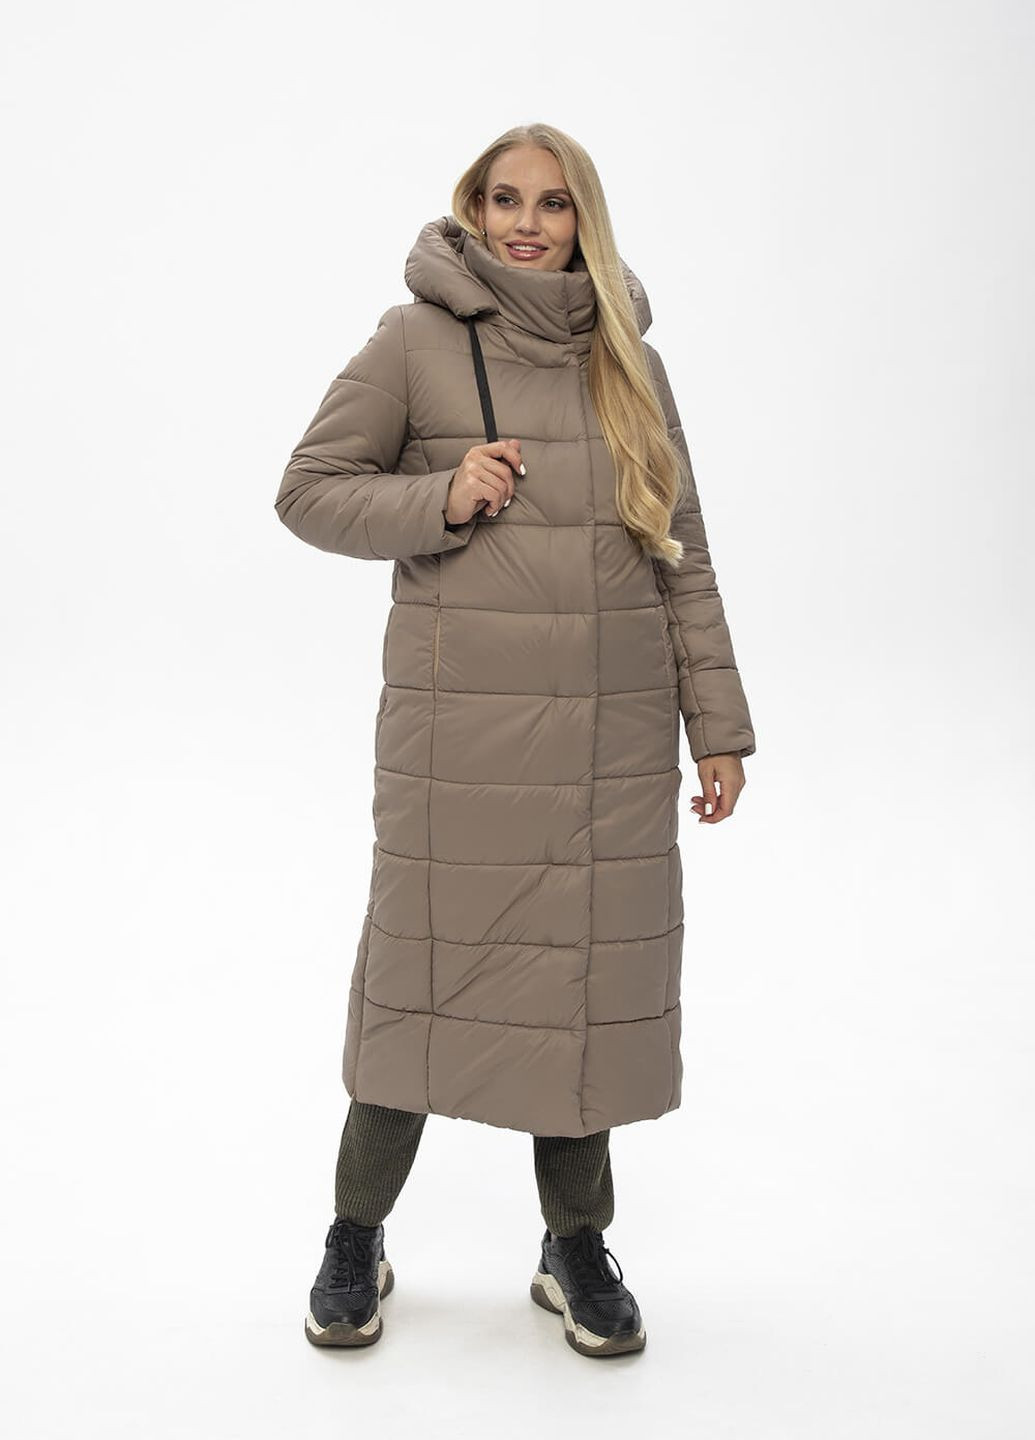 Бежевая зимняя куртка-пальто с капюшоном агата MioRichi